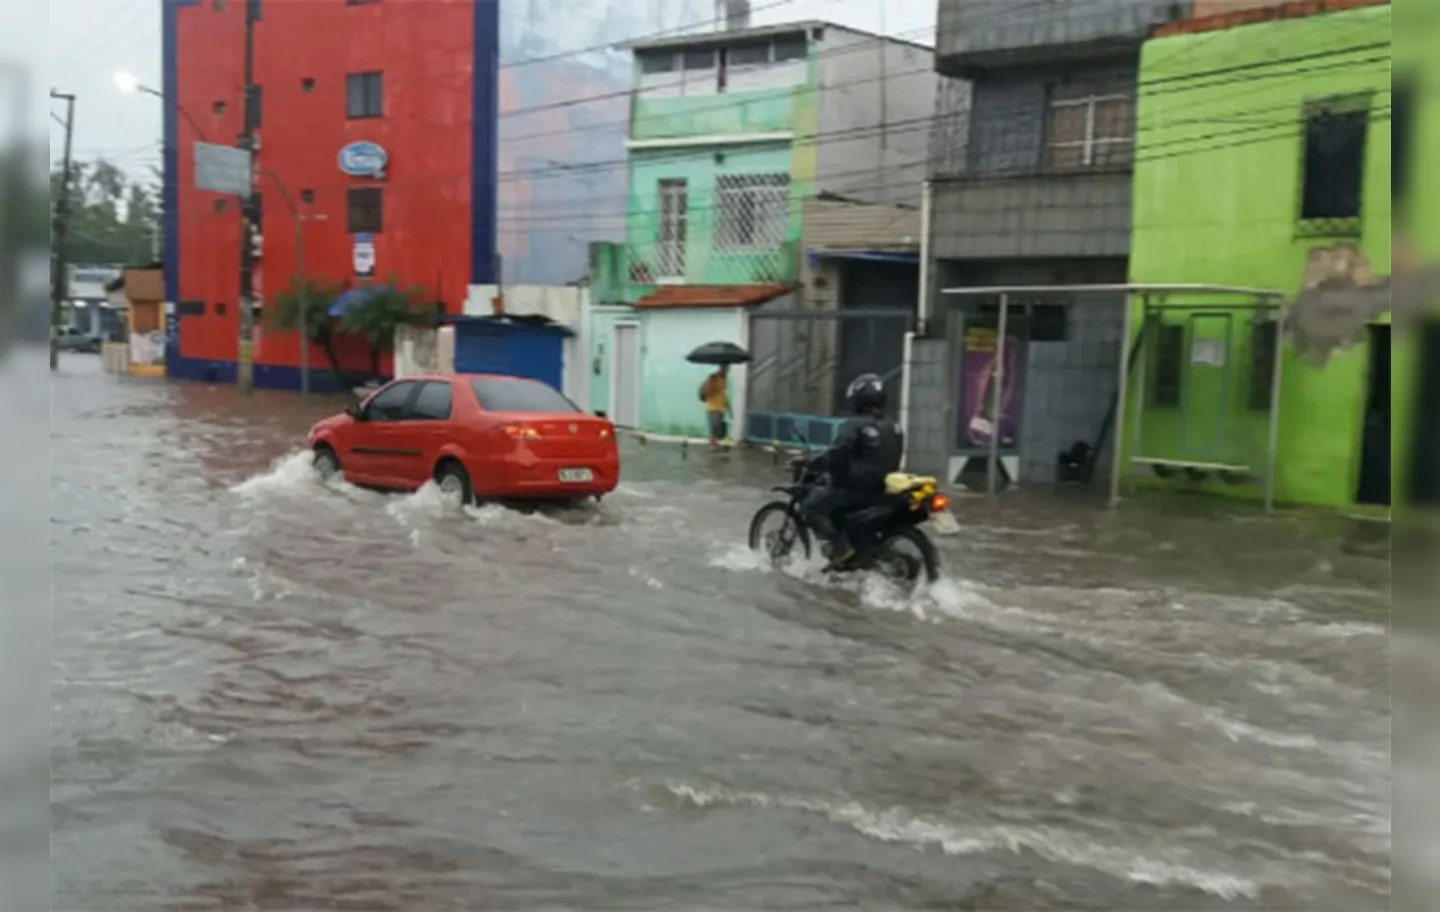 Alagamentos, deslizamentos de terra, e até mesmo, uma colisão entre quatro veículos já foram registradas nas primeiras horas de chuva | Foto: Reprodução | Cidadão Repórter via Whatsapp